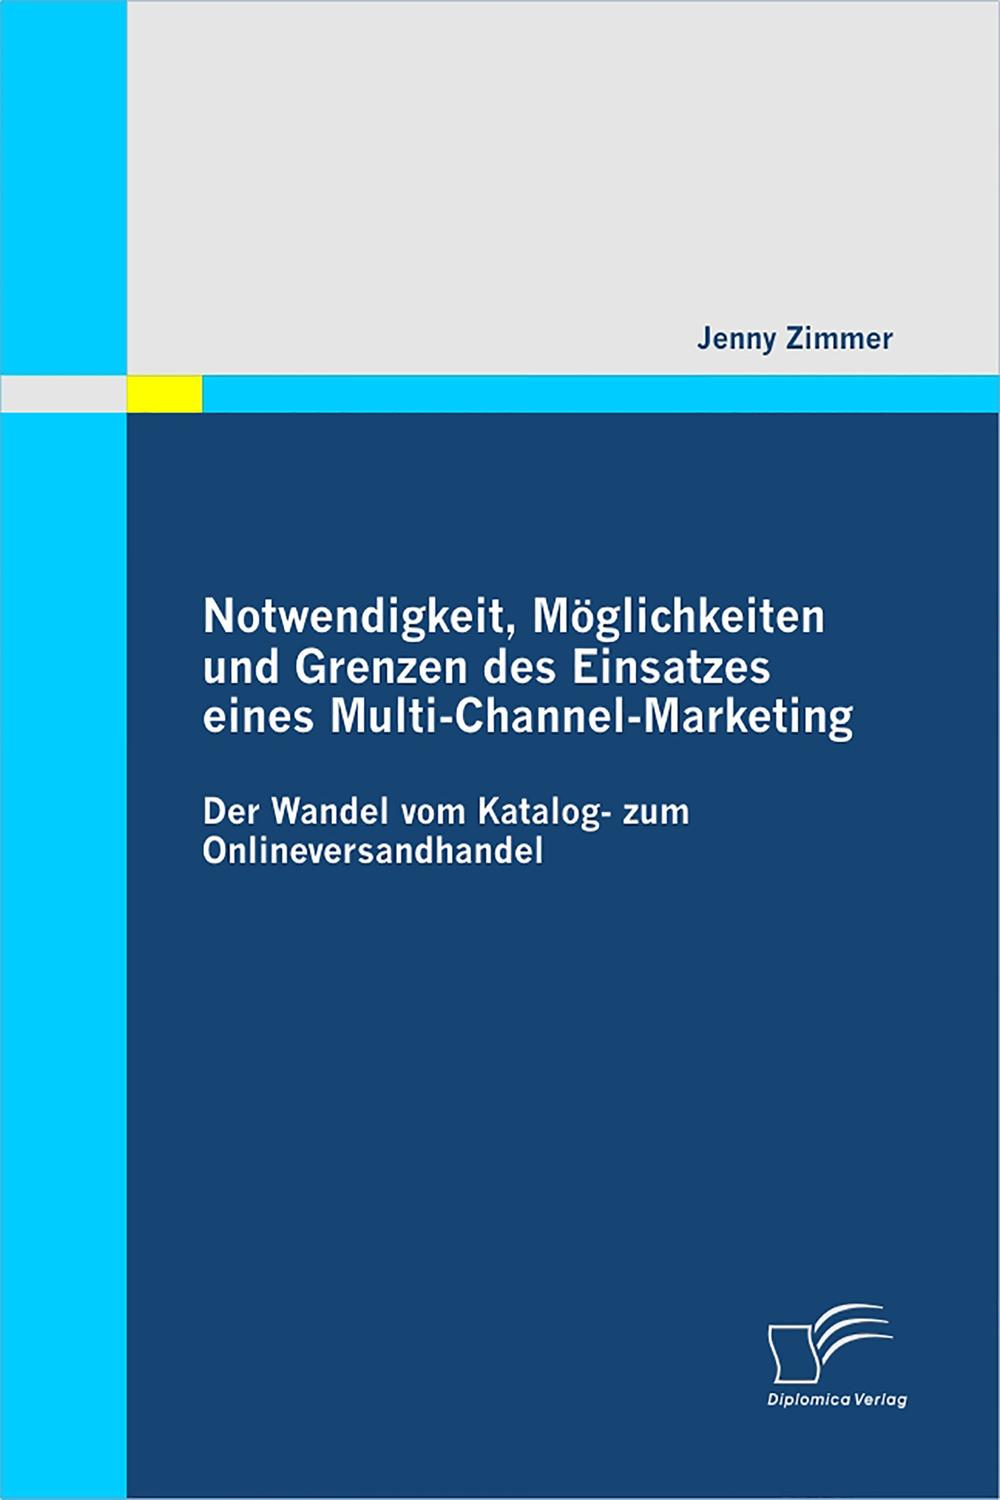 Notwendigkeit, Möglichkeiten und Grenzen des Einsatzes eines Multi-Channel-Marketing: Der Wandel vom Katalog- zum Onlineversandhandel - Jenny Zimmer